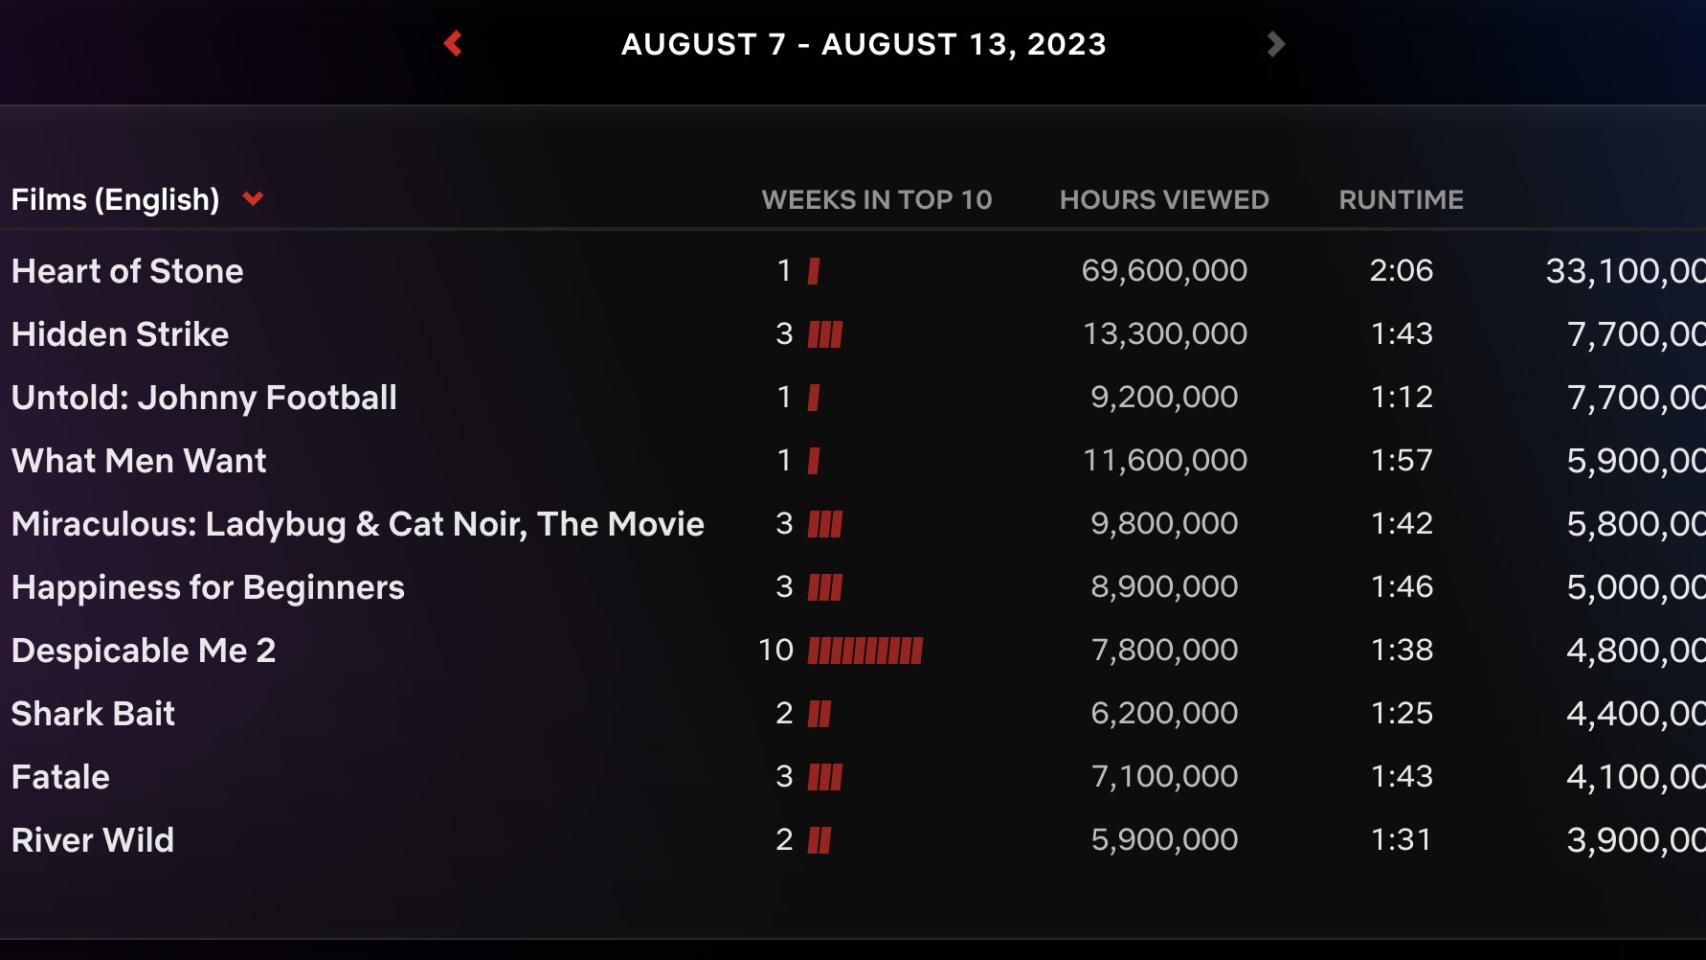 Estas son las películas en inglés más vistas entre el 7 y el 13 de agosto.